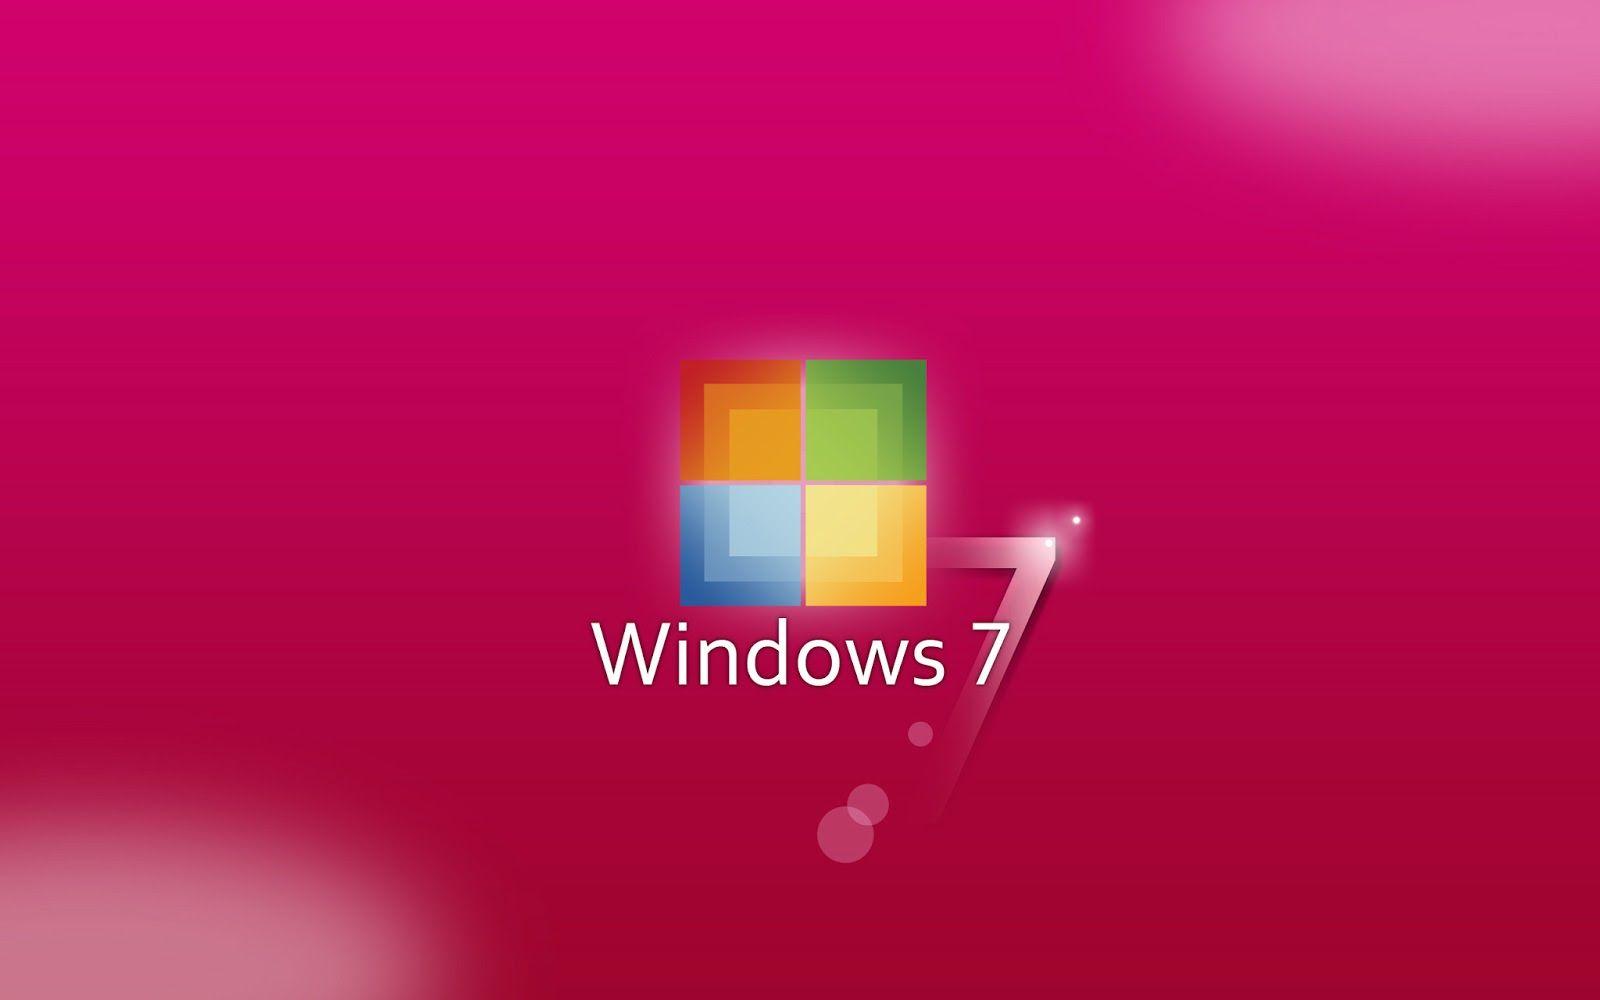 Bạn yêu thích màu hồng và đang tìm kiếm một hình nền tuyệt đẹp cho máy tính của mình? Hãy xem ngay hình nền Windows 7 màu hồng để có trải nghiệm tuyệt vời nhất!